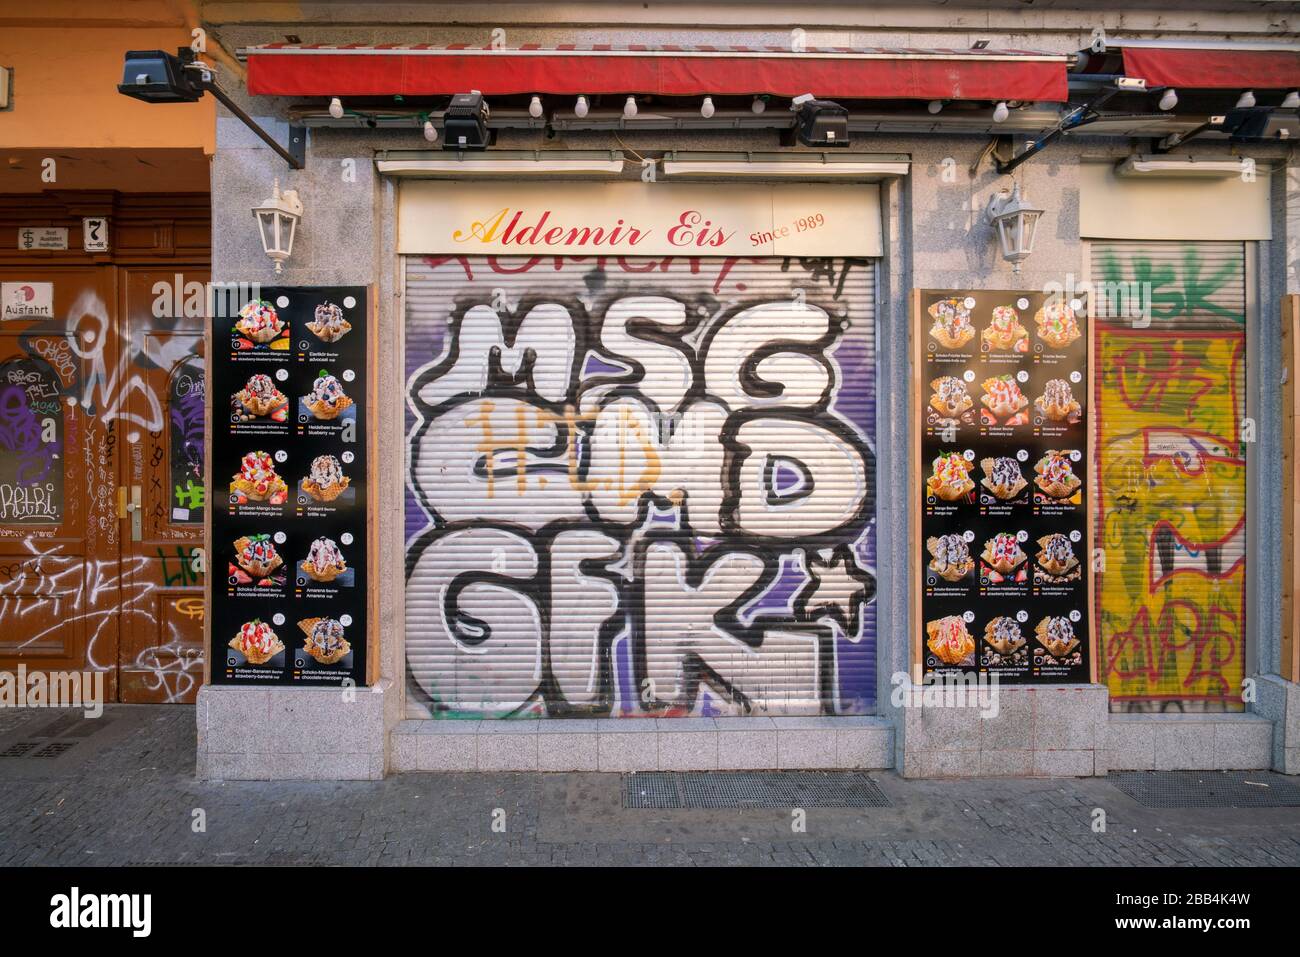 Ademir Eis geschlossen wegen Corona Pandemie, Kreuzberg, Berlin Stock Photo